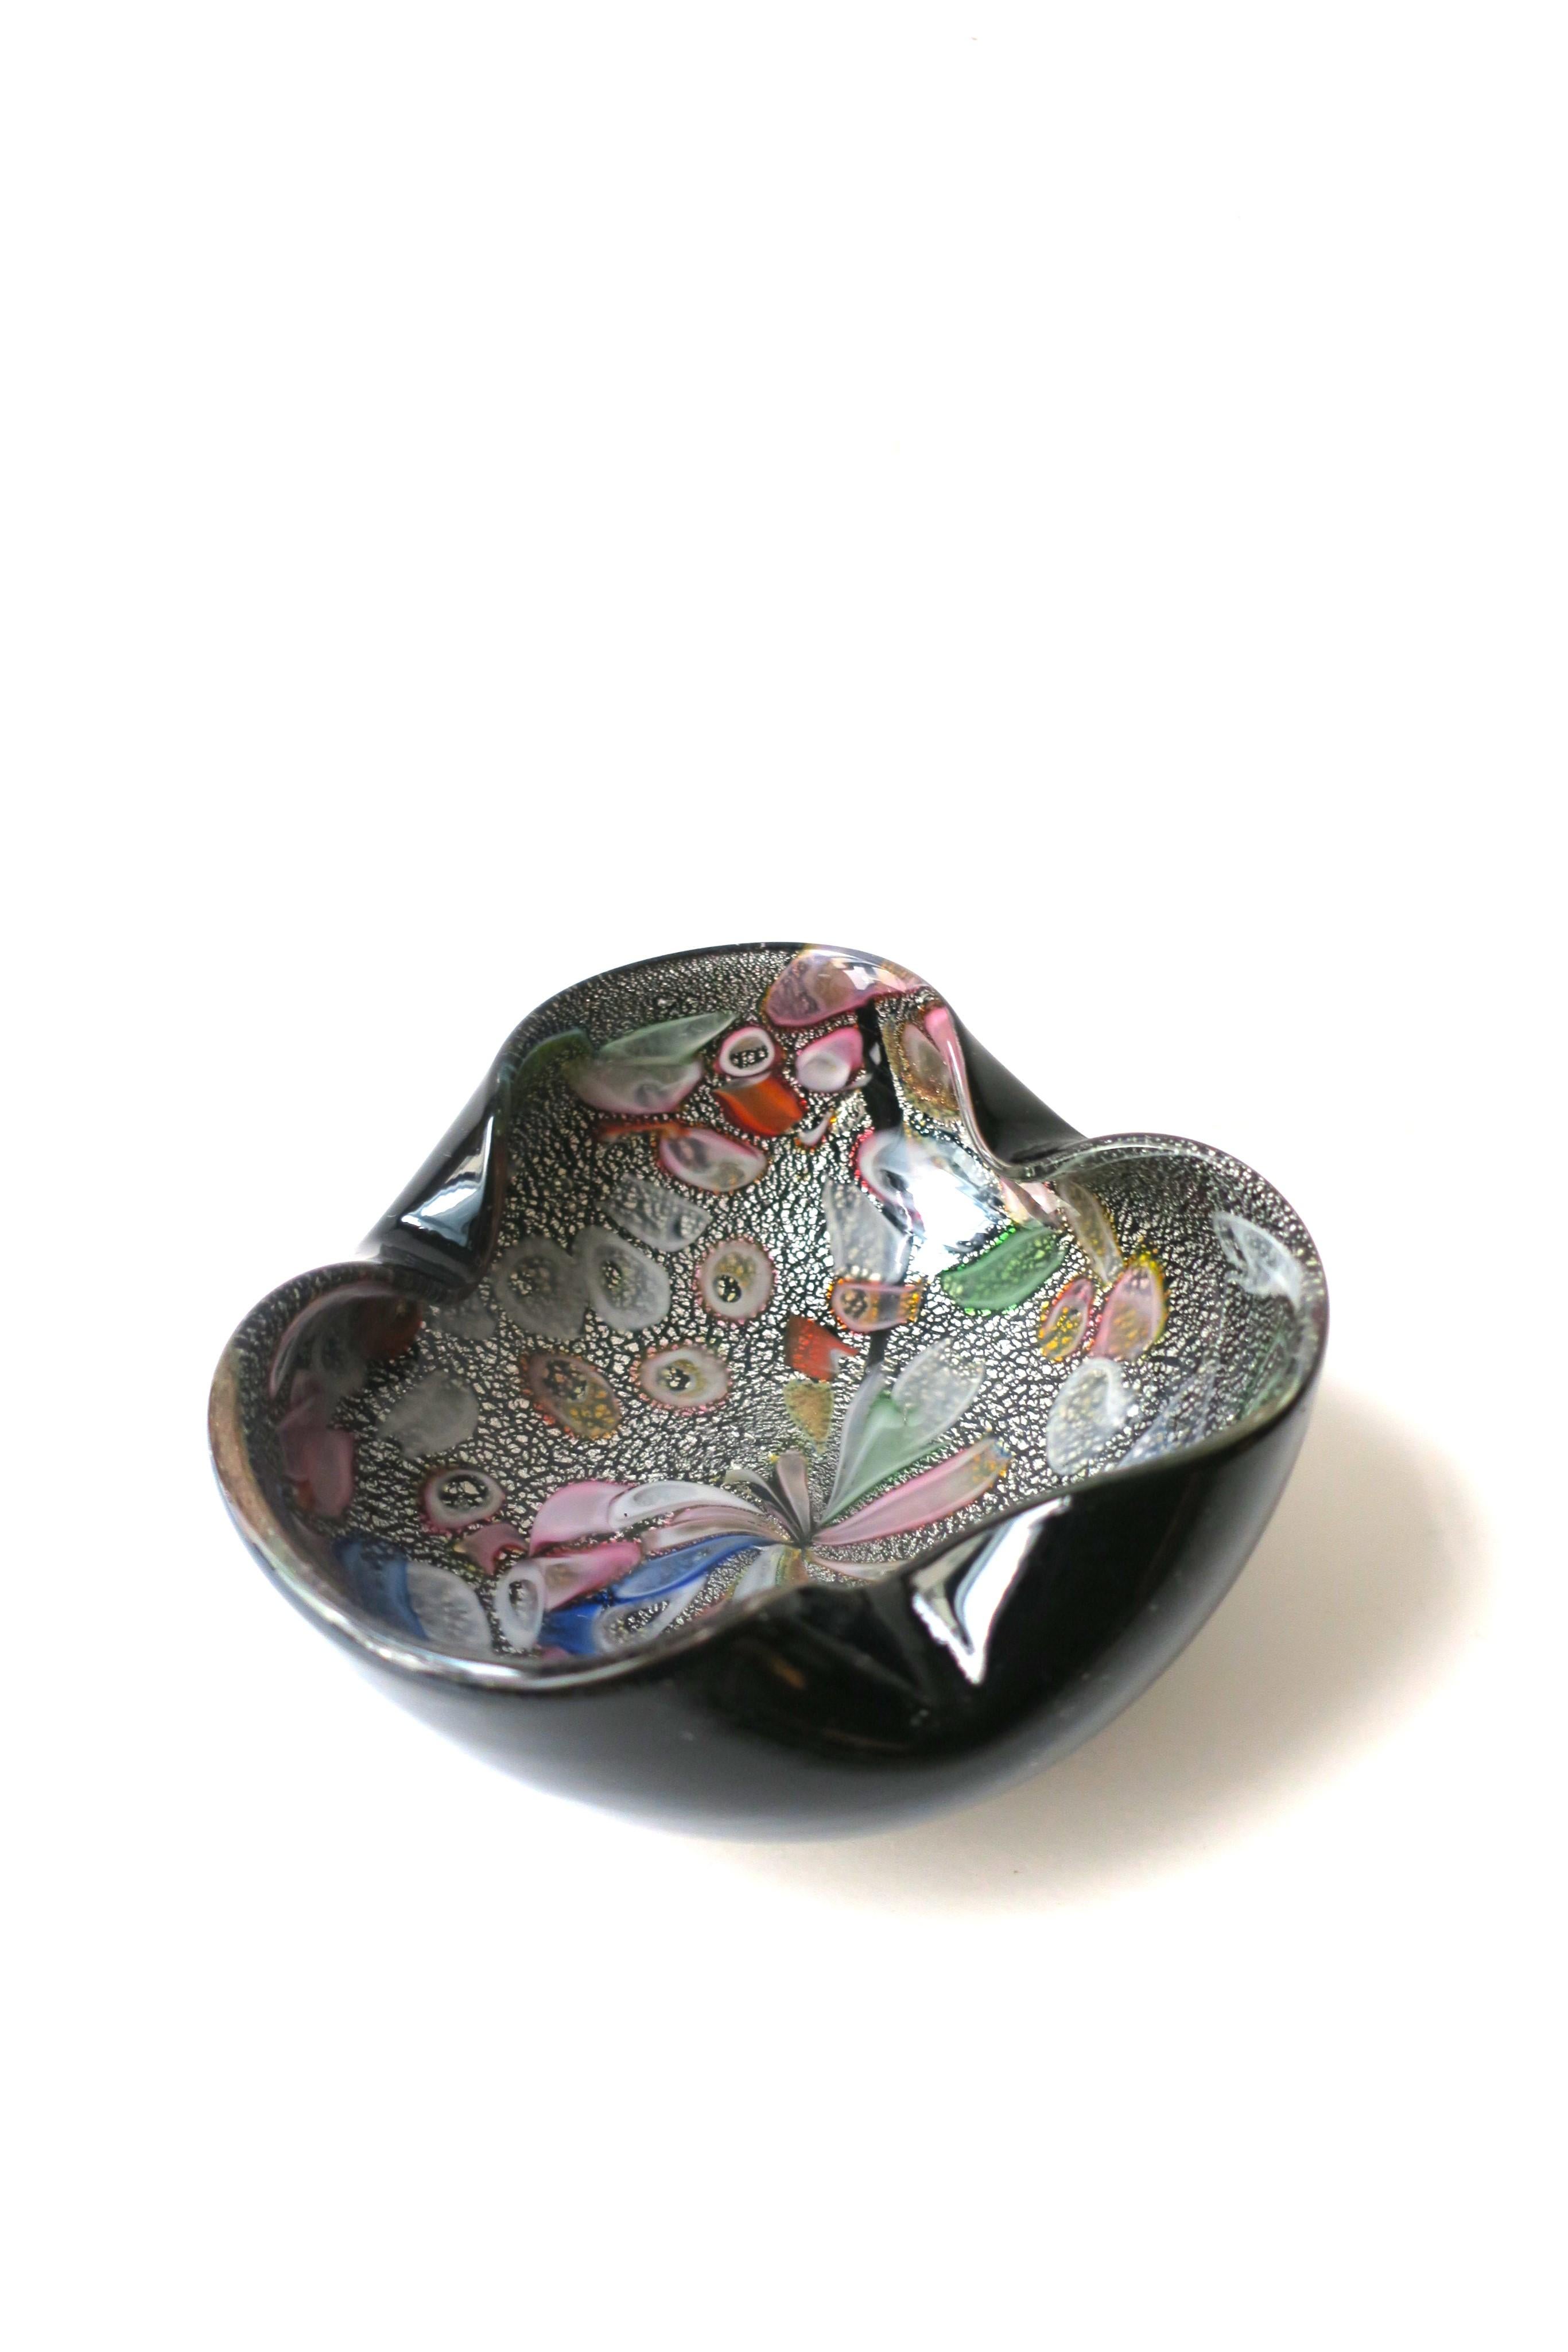 20th Century Italian Murano Millefiori Art Glass Bowl Attributed to Dino Martens, circa 1960s For Sale